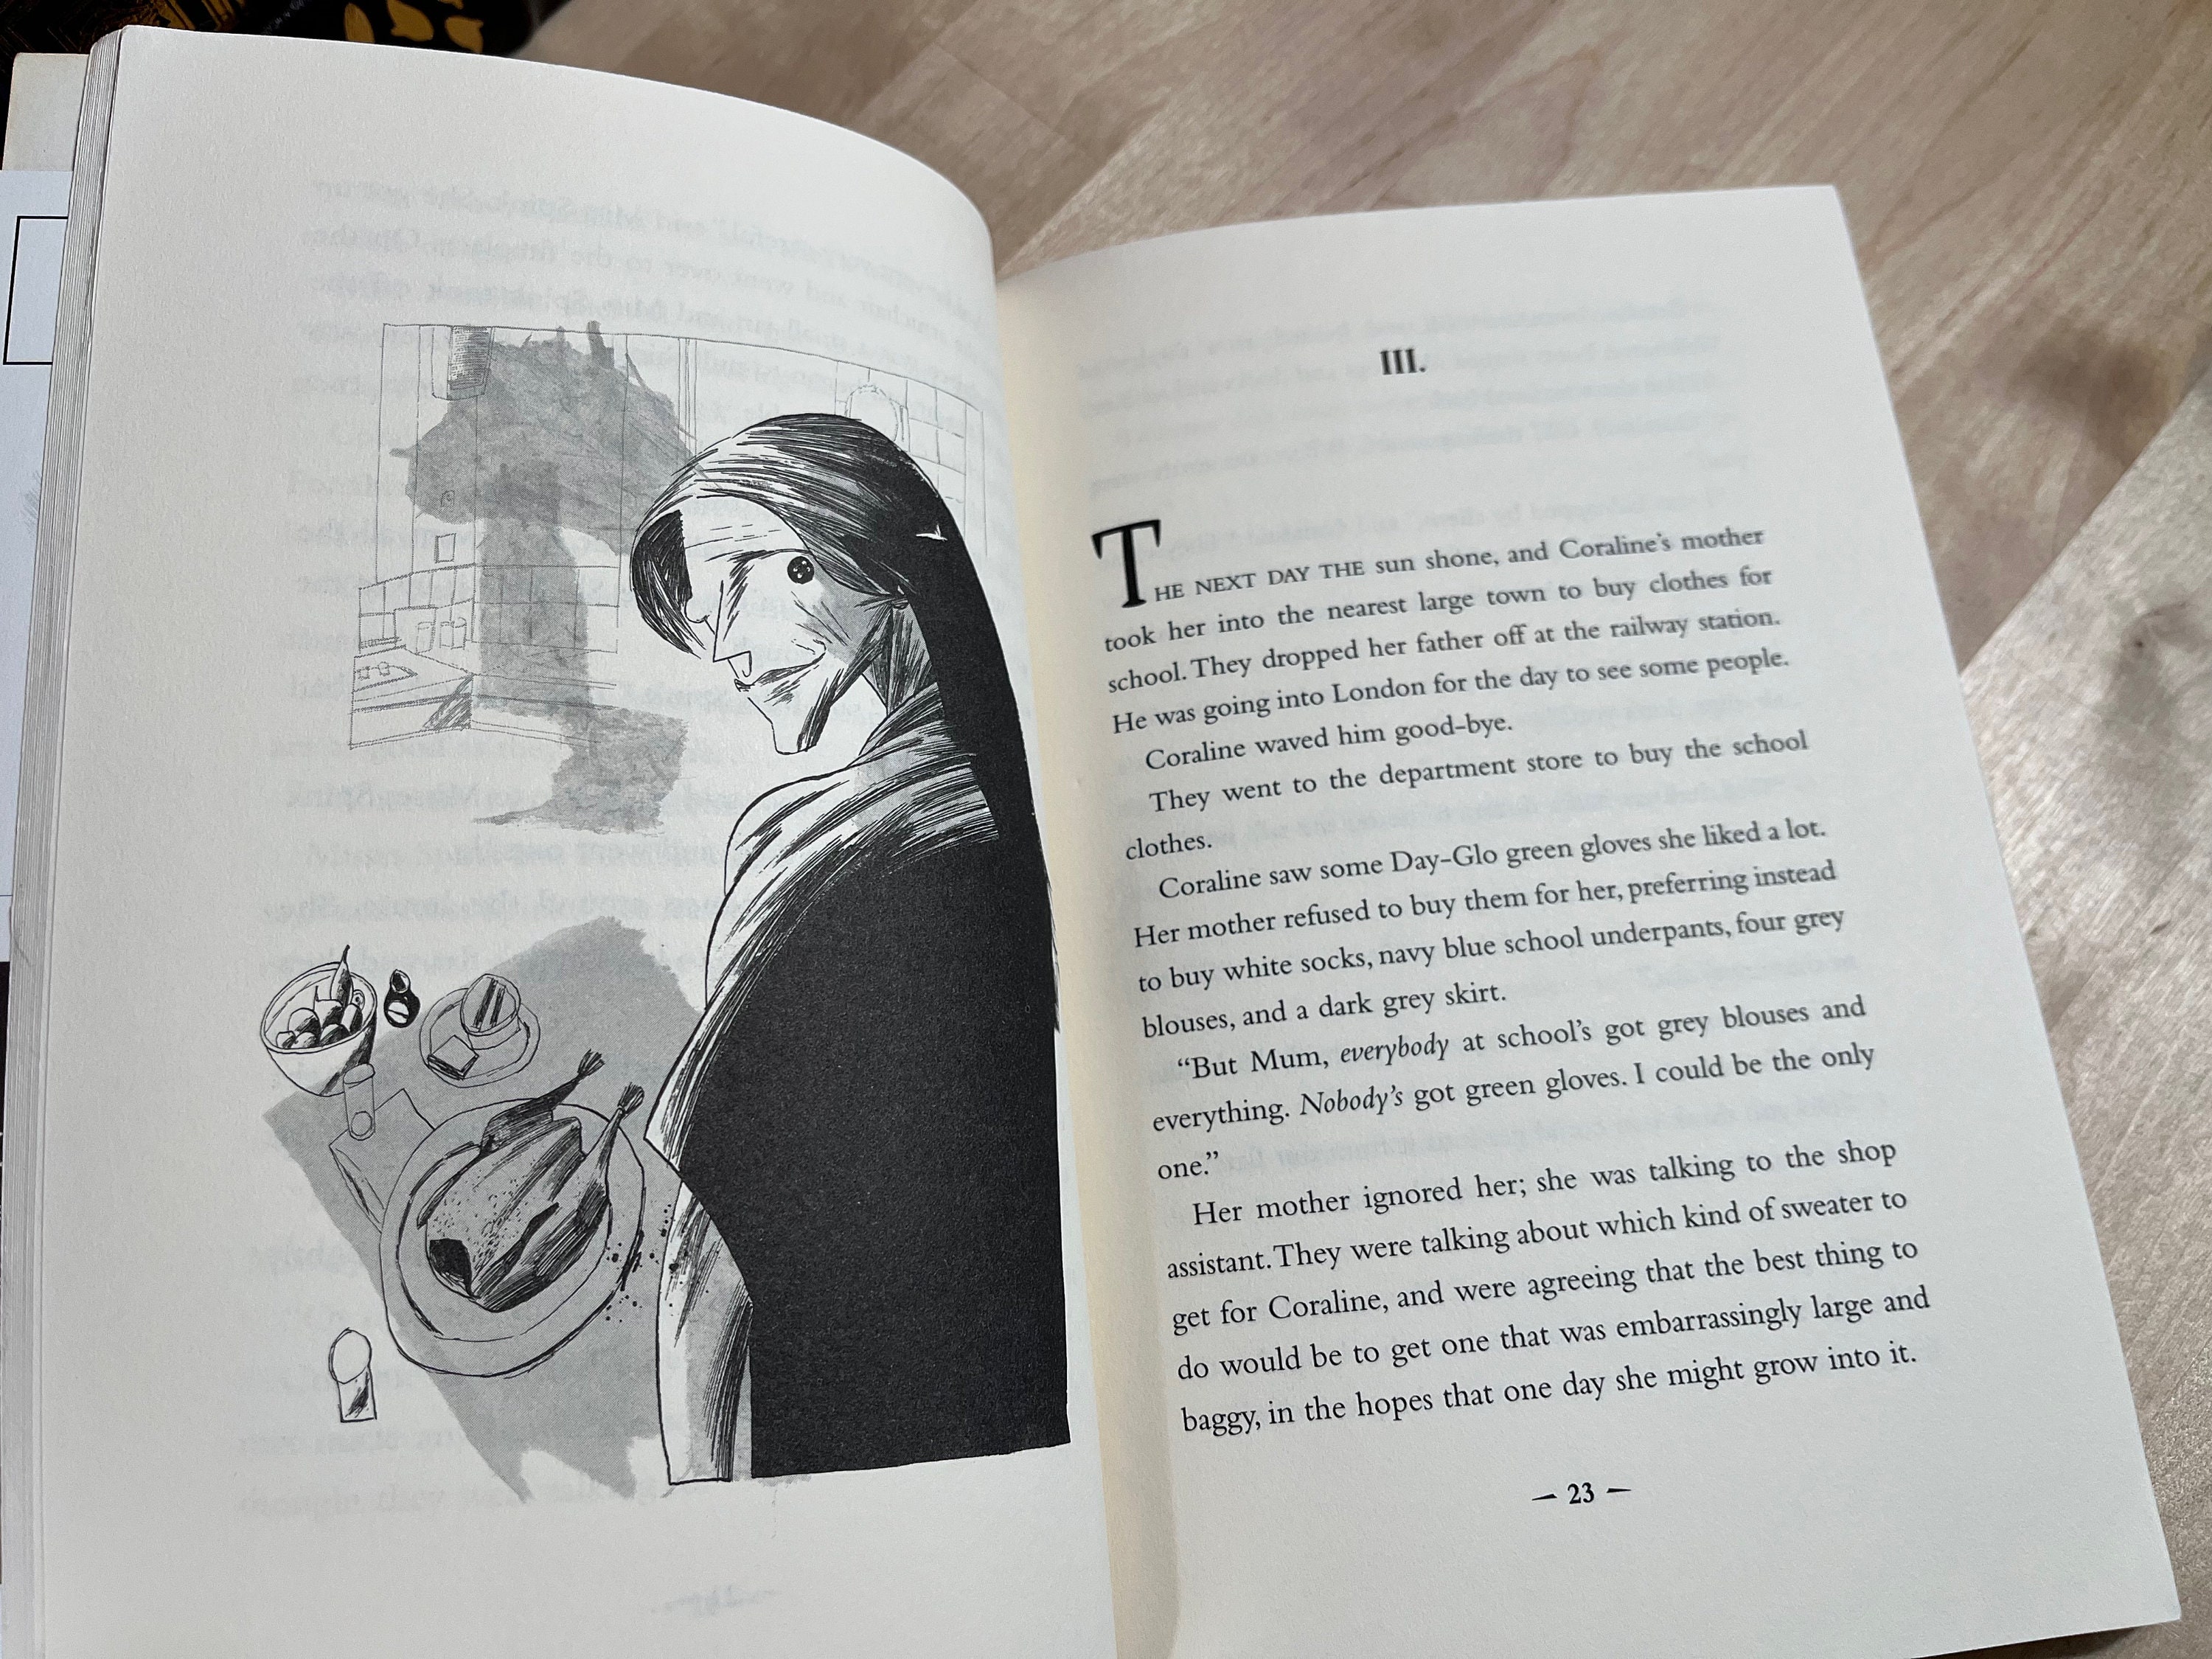 Coraline: recensione del romanzo dell'autore Neil Gaiman